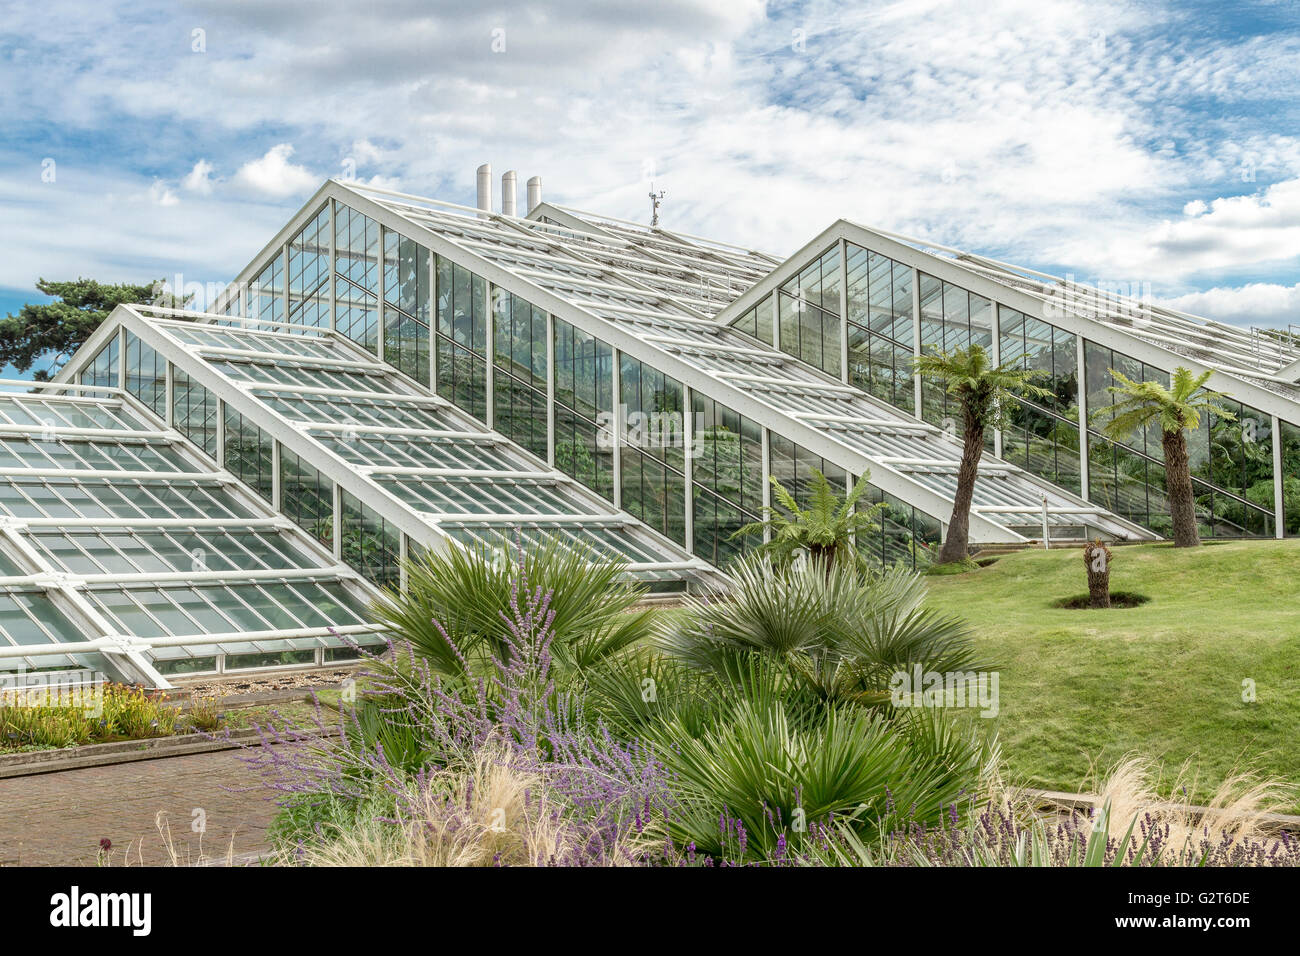 Le Princess of Wales Conservatory au Royal Botanic Gardens, Kew, ouvert en 1987 par la princesse Diana, Kew, Gardens, Londres, Royaume-Uni Banque D'Images